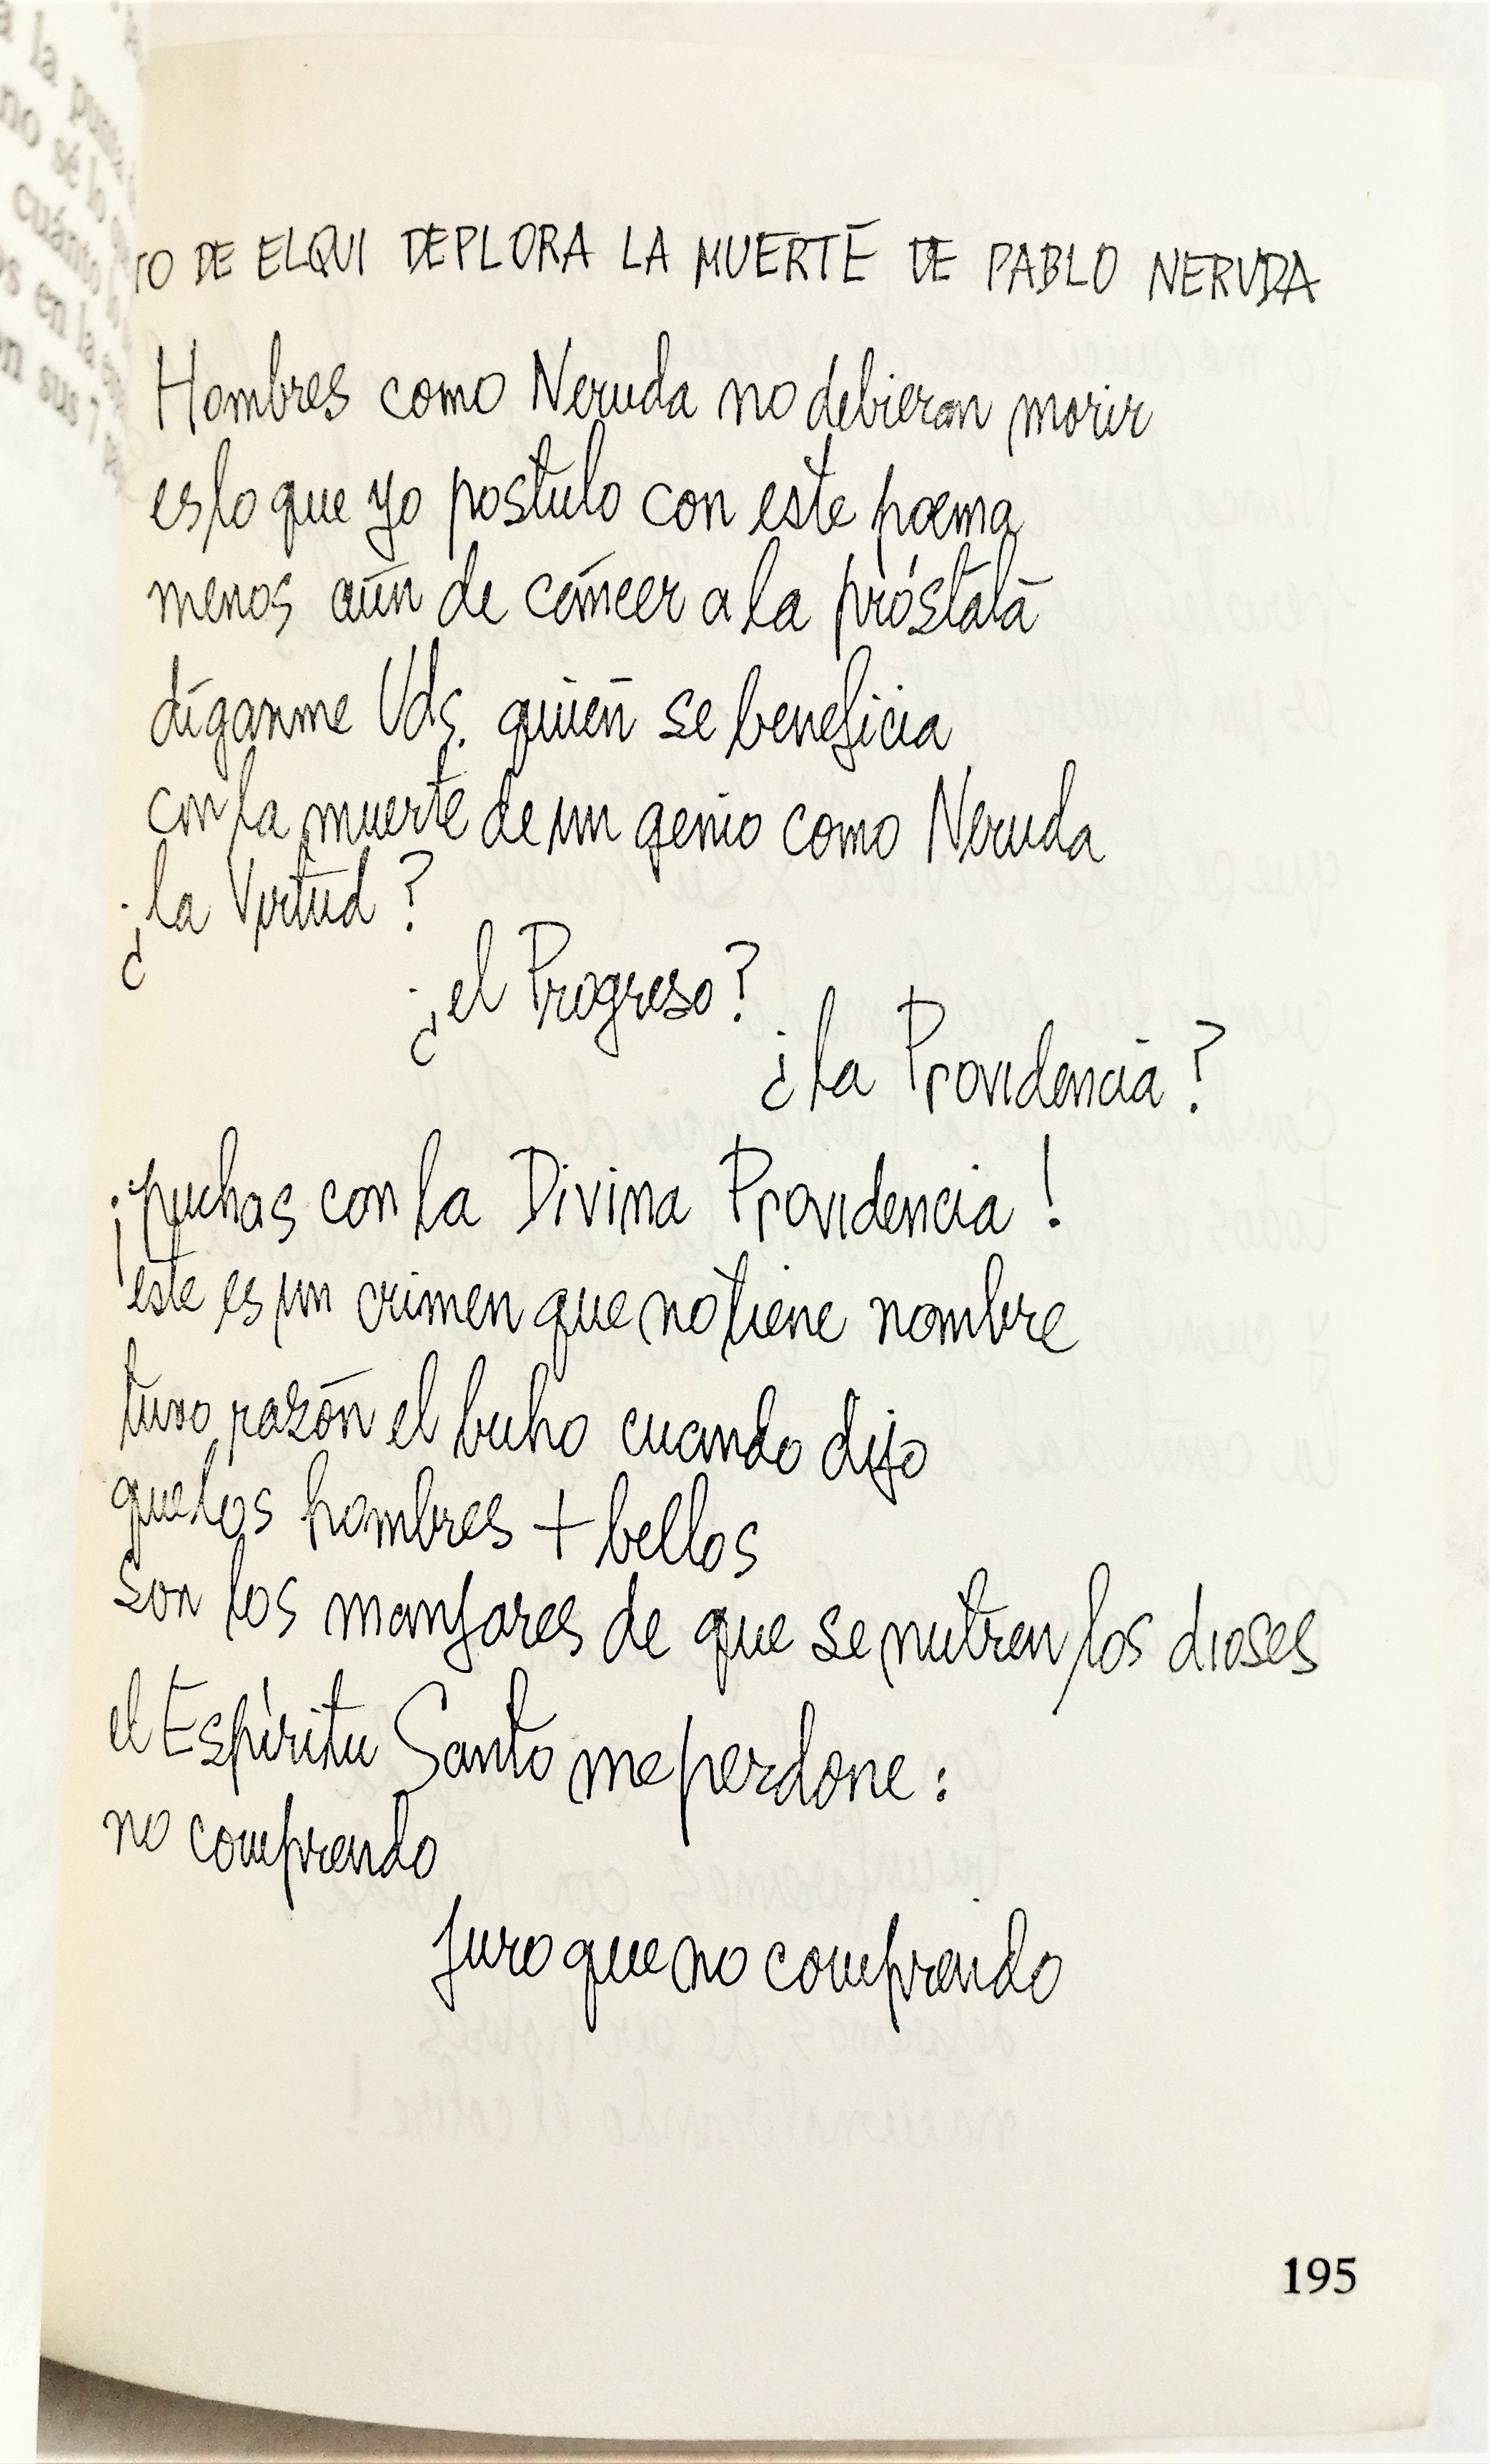 Nicanor Parra	- Poesía política